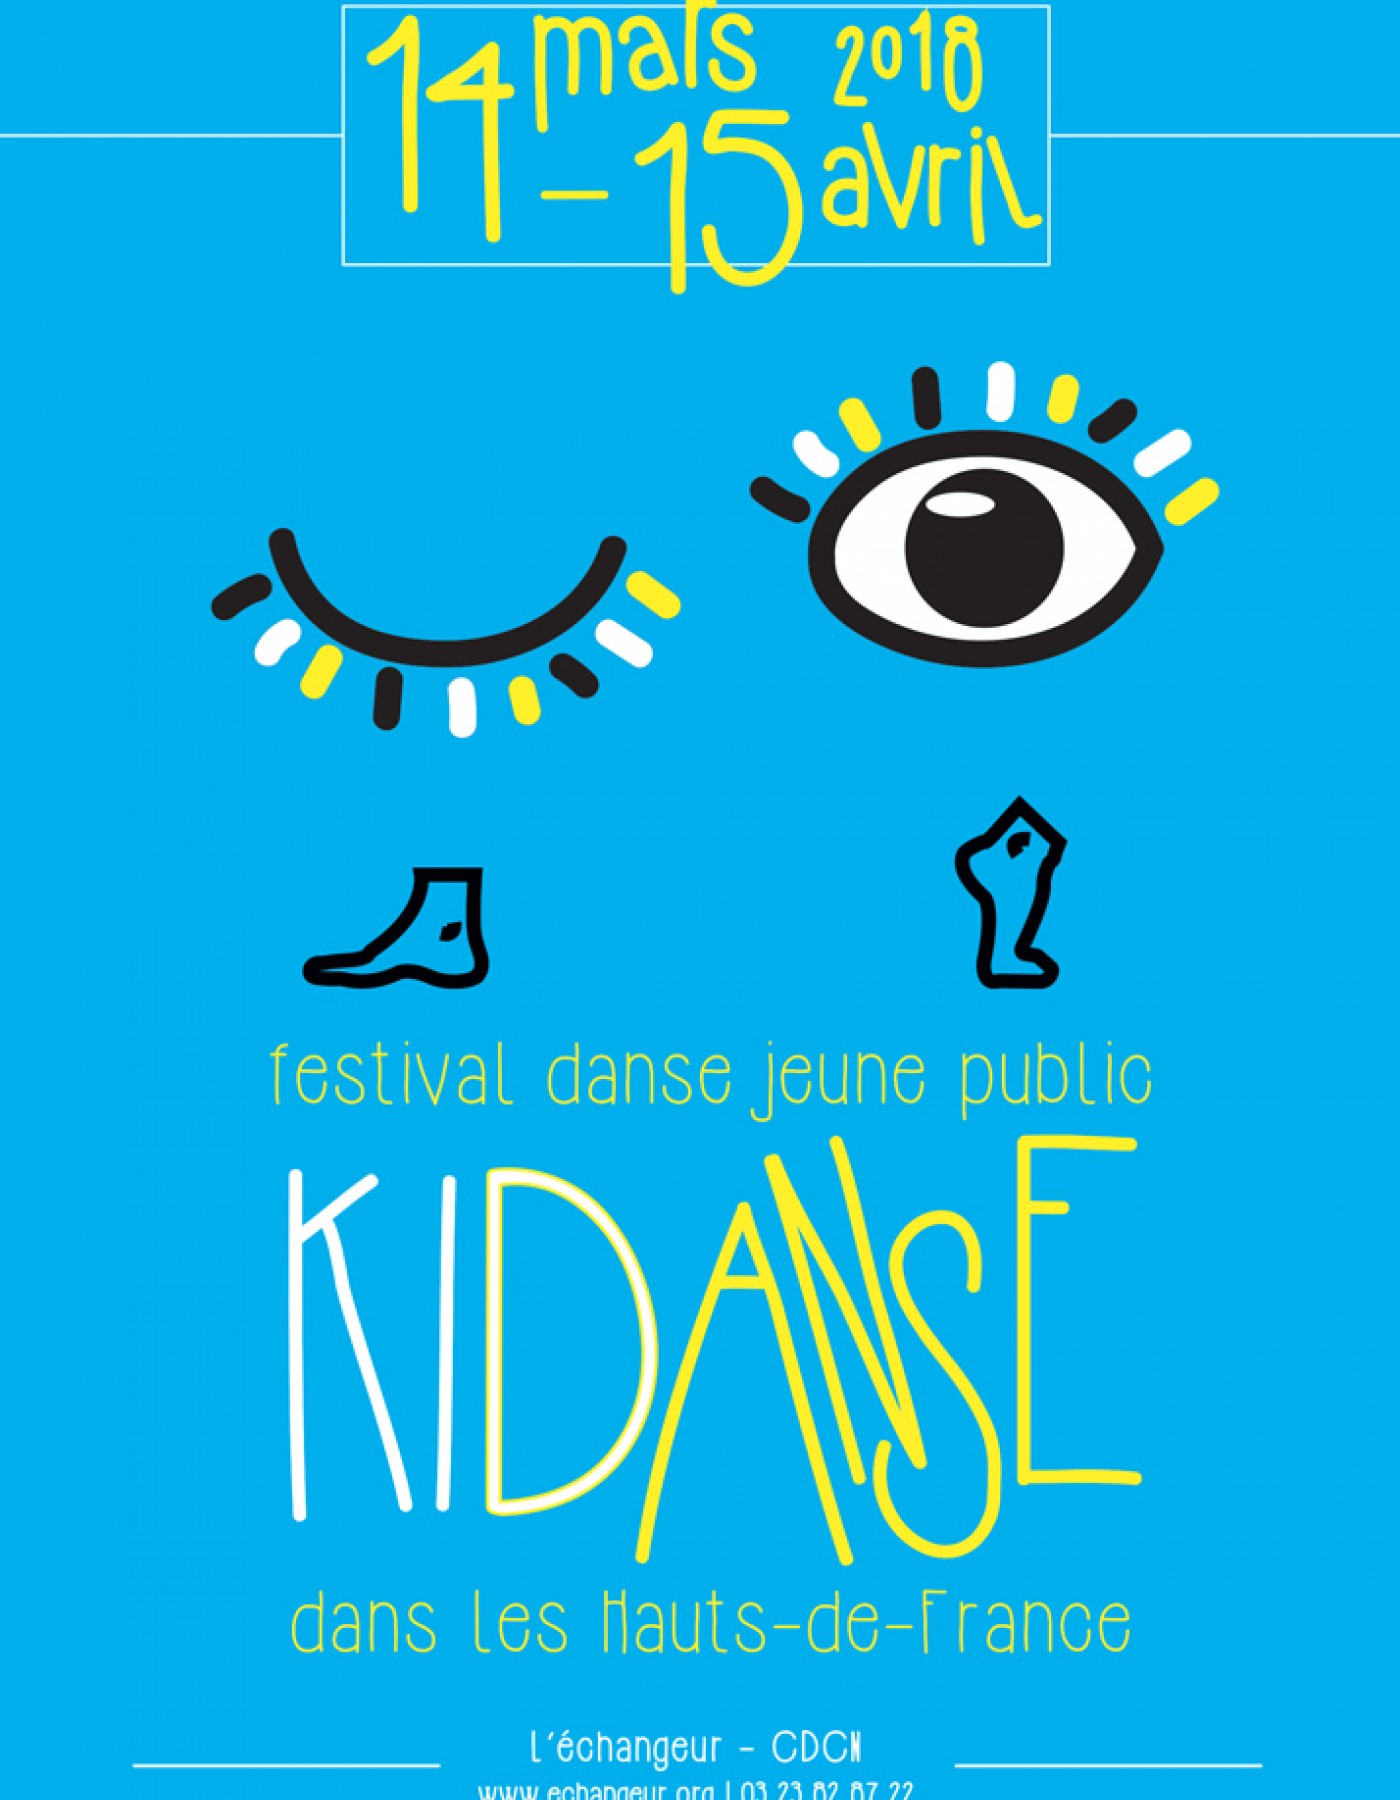 Festival Kidanse